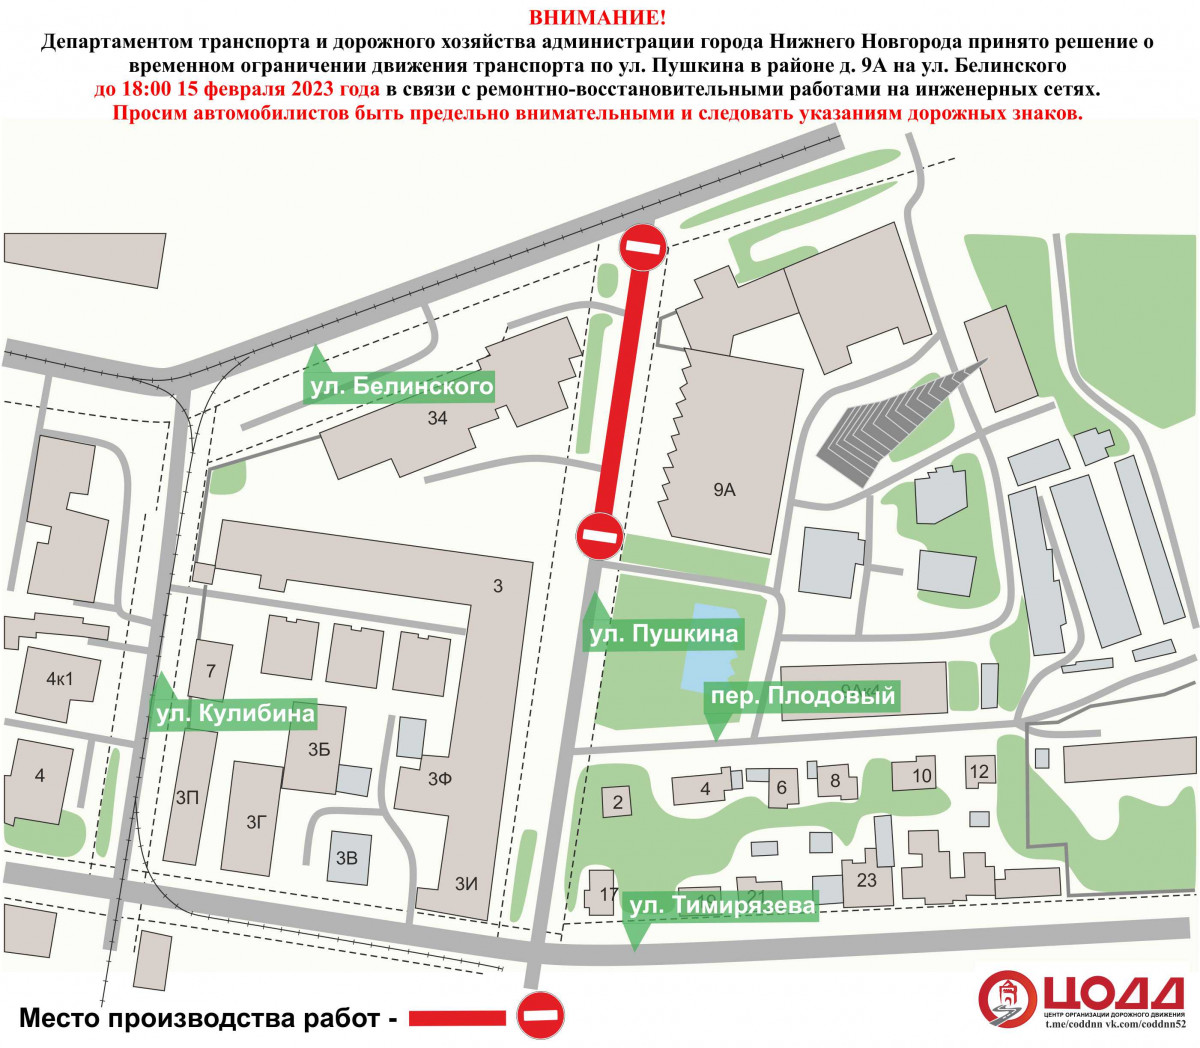 Движение транспорта приостановят на участке улицы Пушкина в Нижнем Новгороде